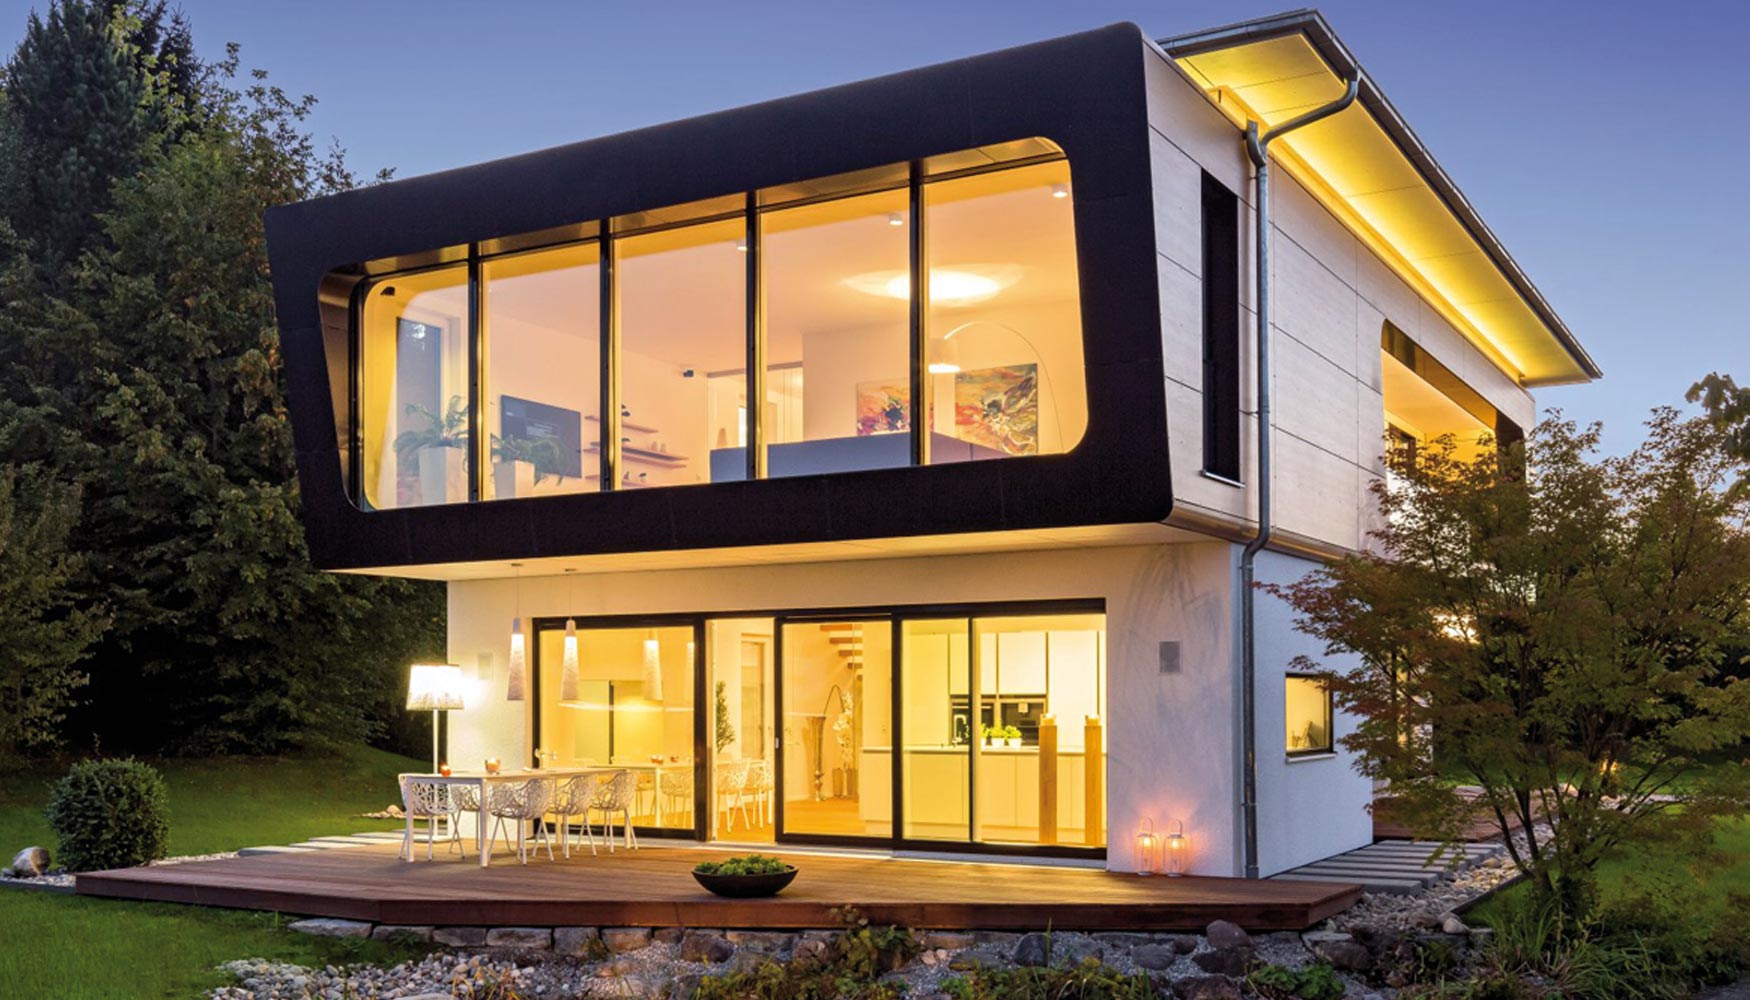 Casa Ambienti +, diseada y fabricada por Regnauer. Obtuvo el premio Golden Cube, en el ao 2014